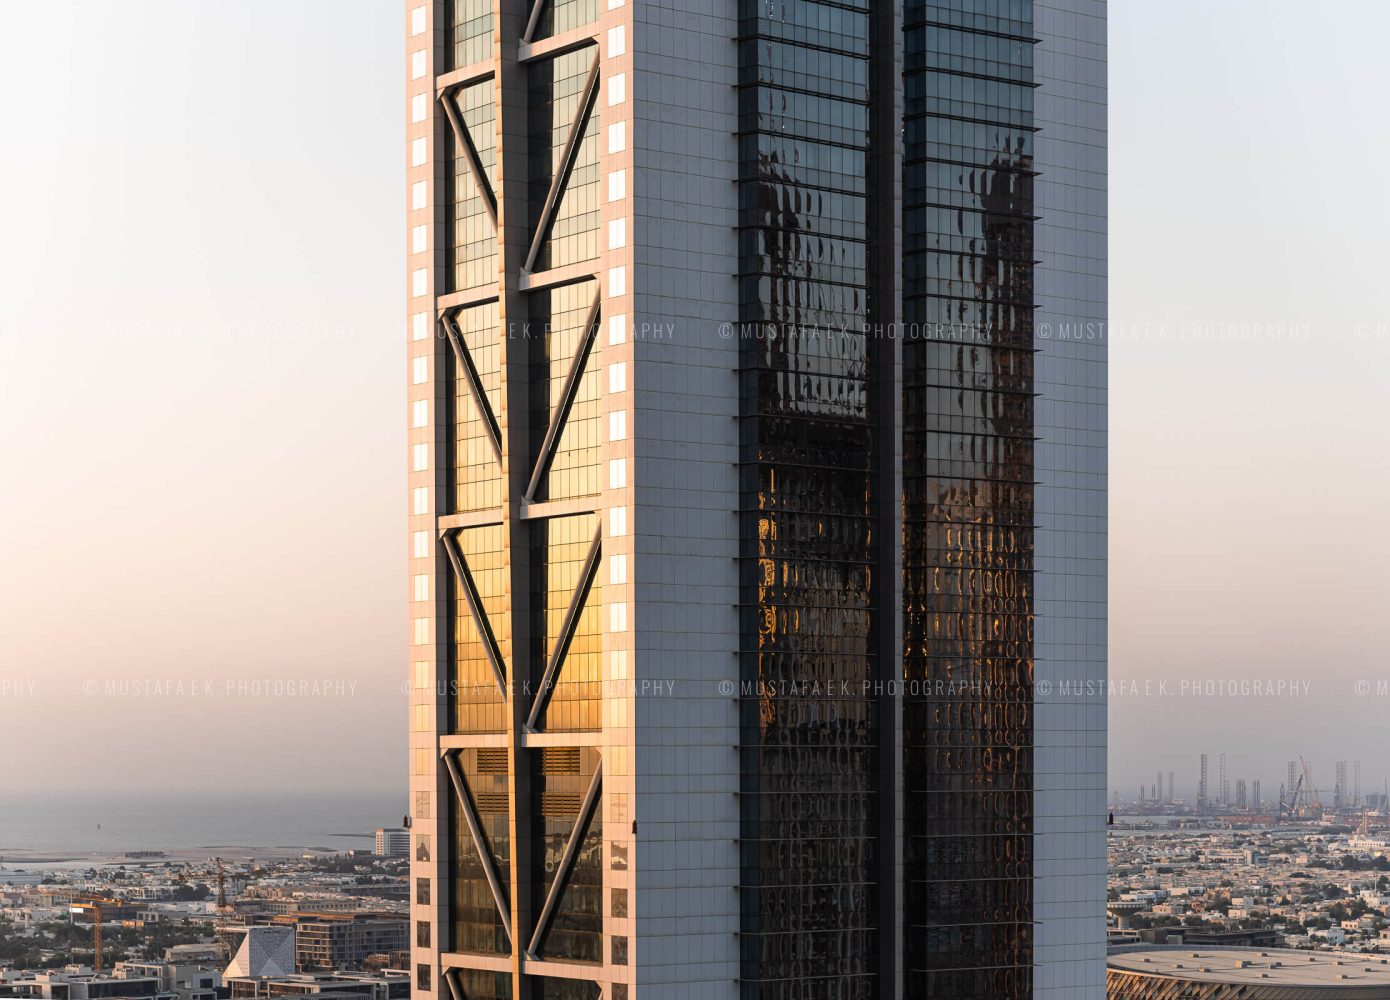 Millennium Tower Dubai Architectural Exterior Photographer Kuwait architecture photography professional detail shot closeup 01